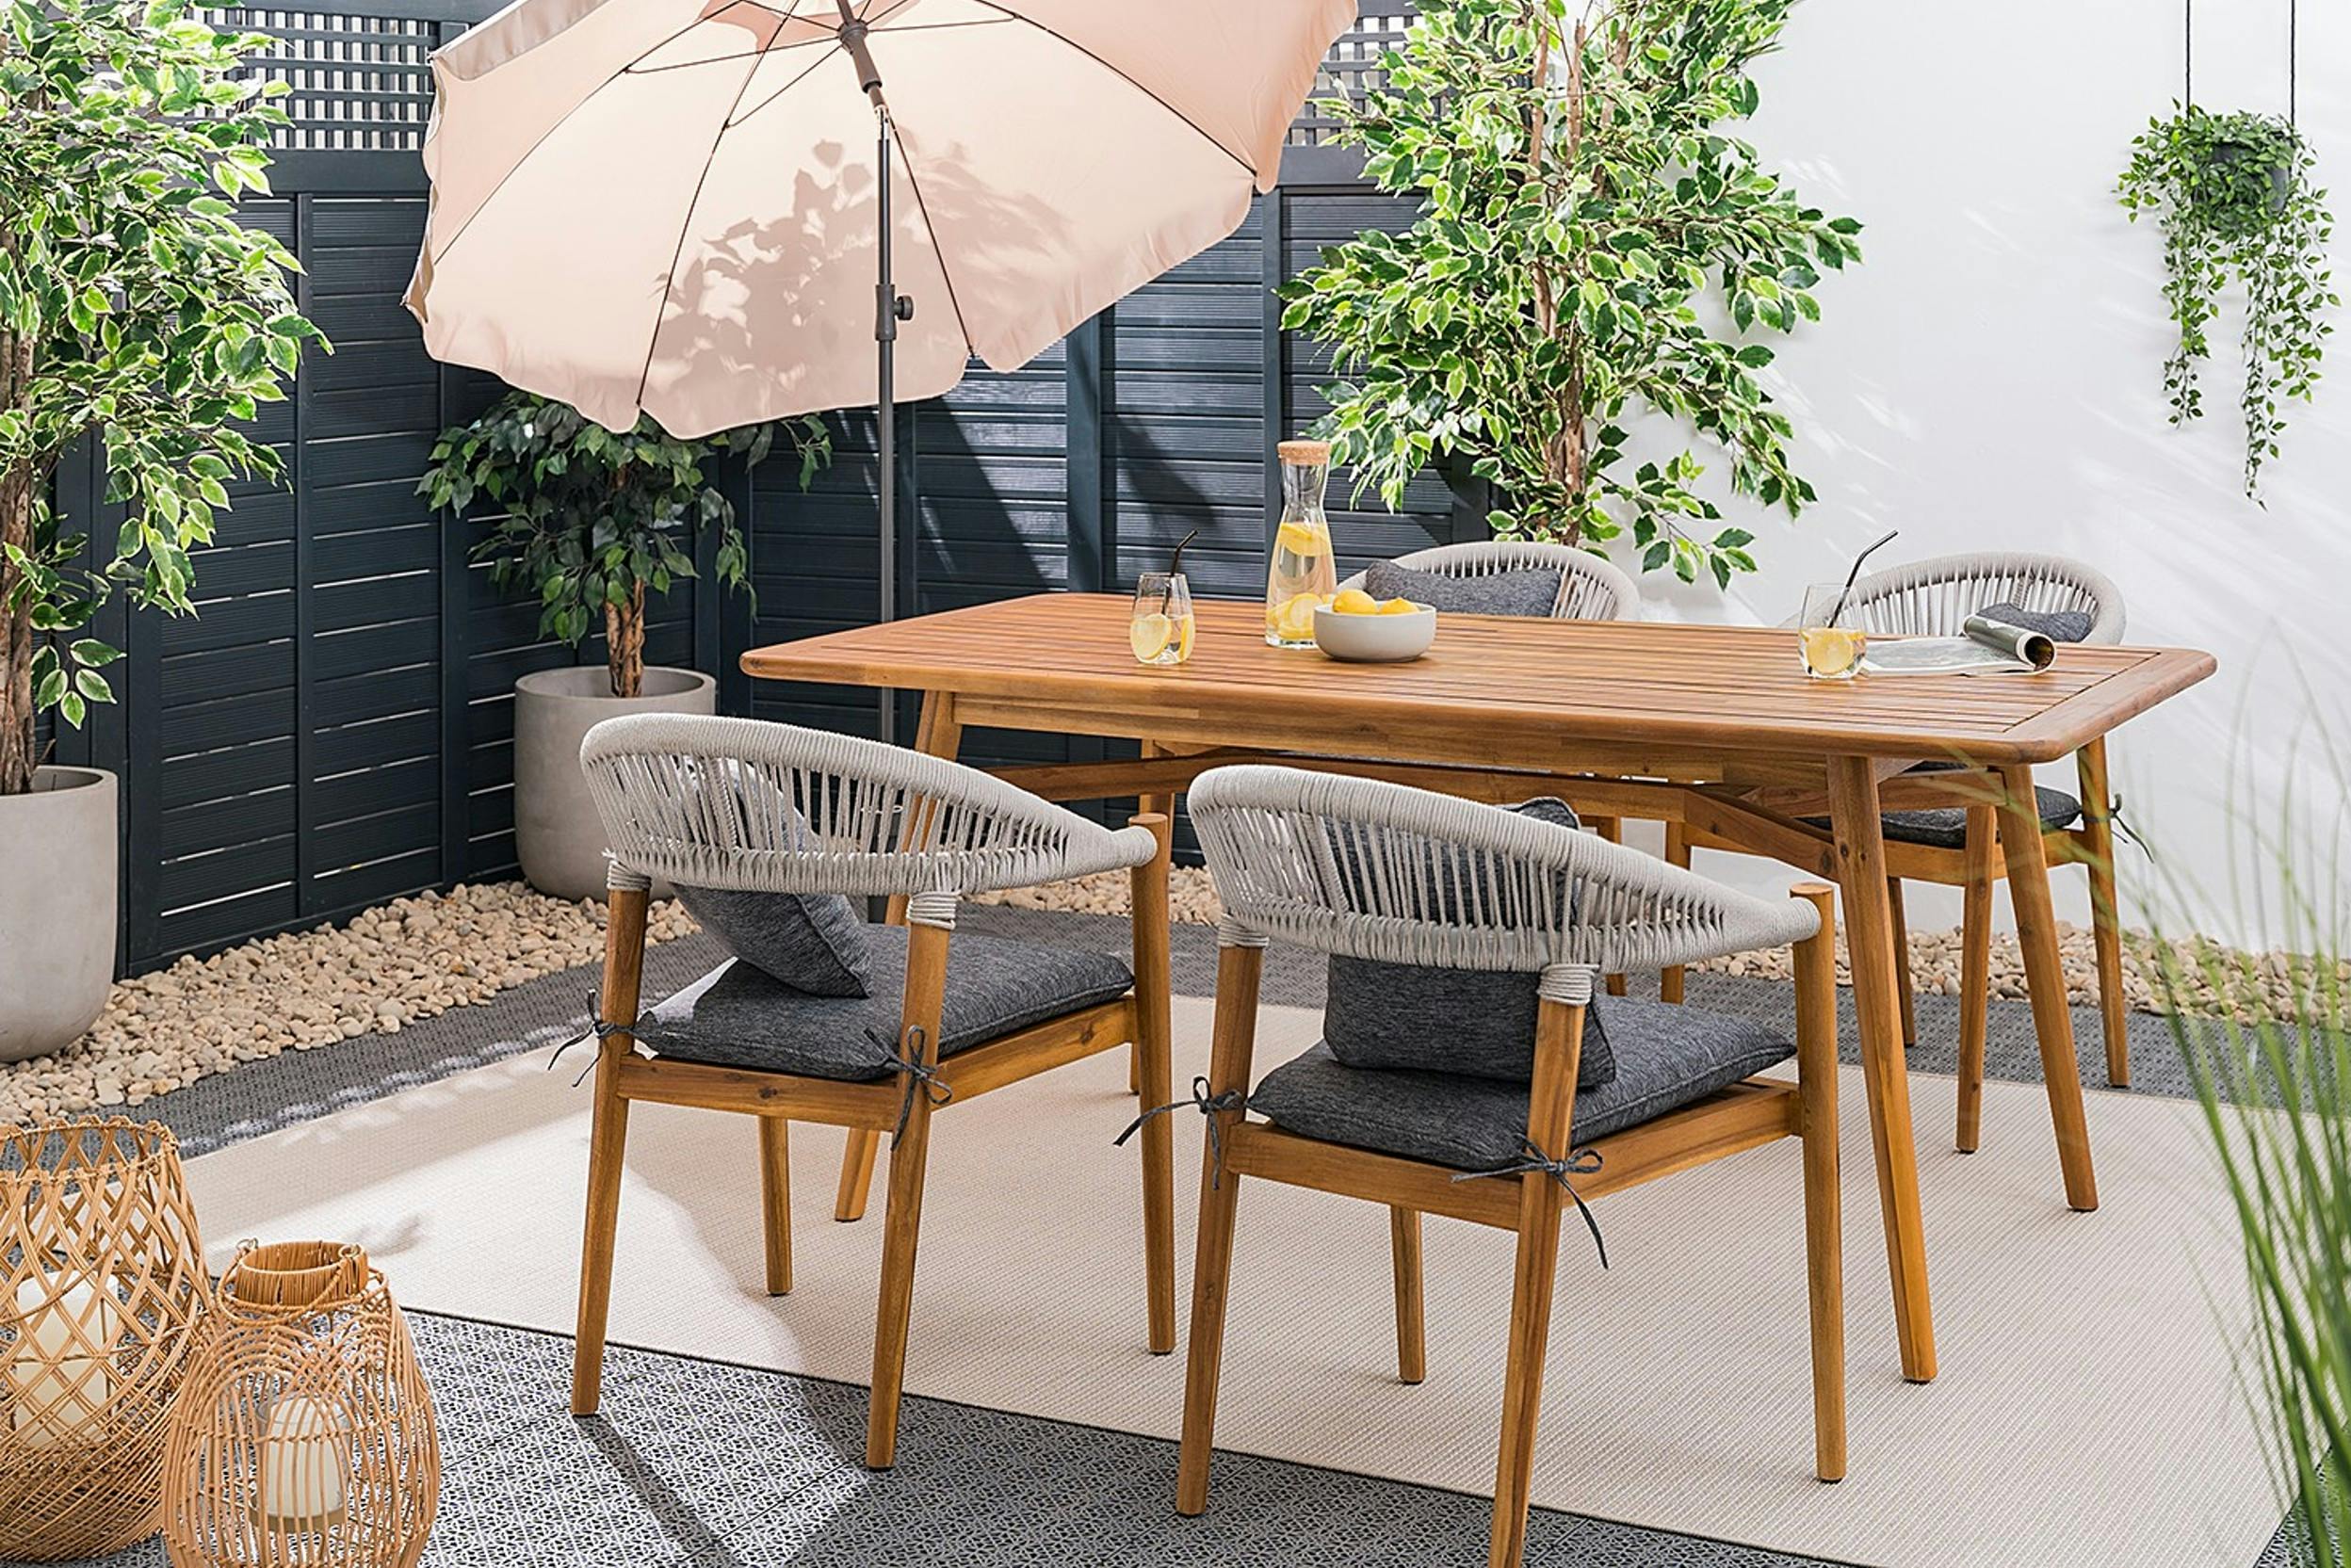 Essgruppe aus Holz mit 4 Stühlen auf einer Terrasse mit Outdoor-Teppich und hellem Sonnenschirm